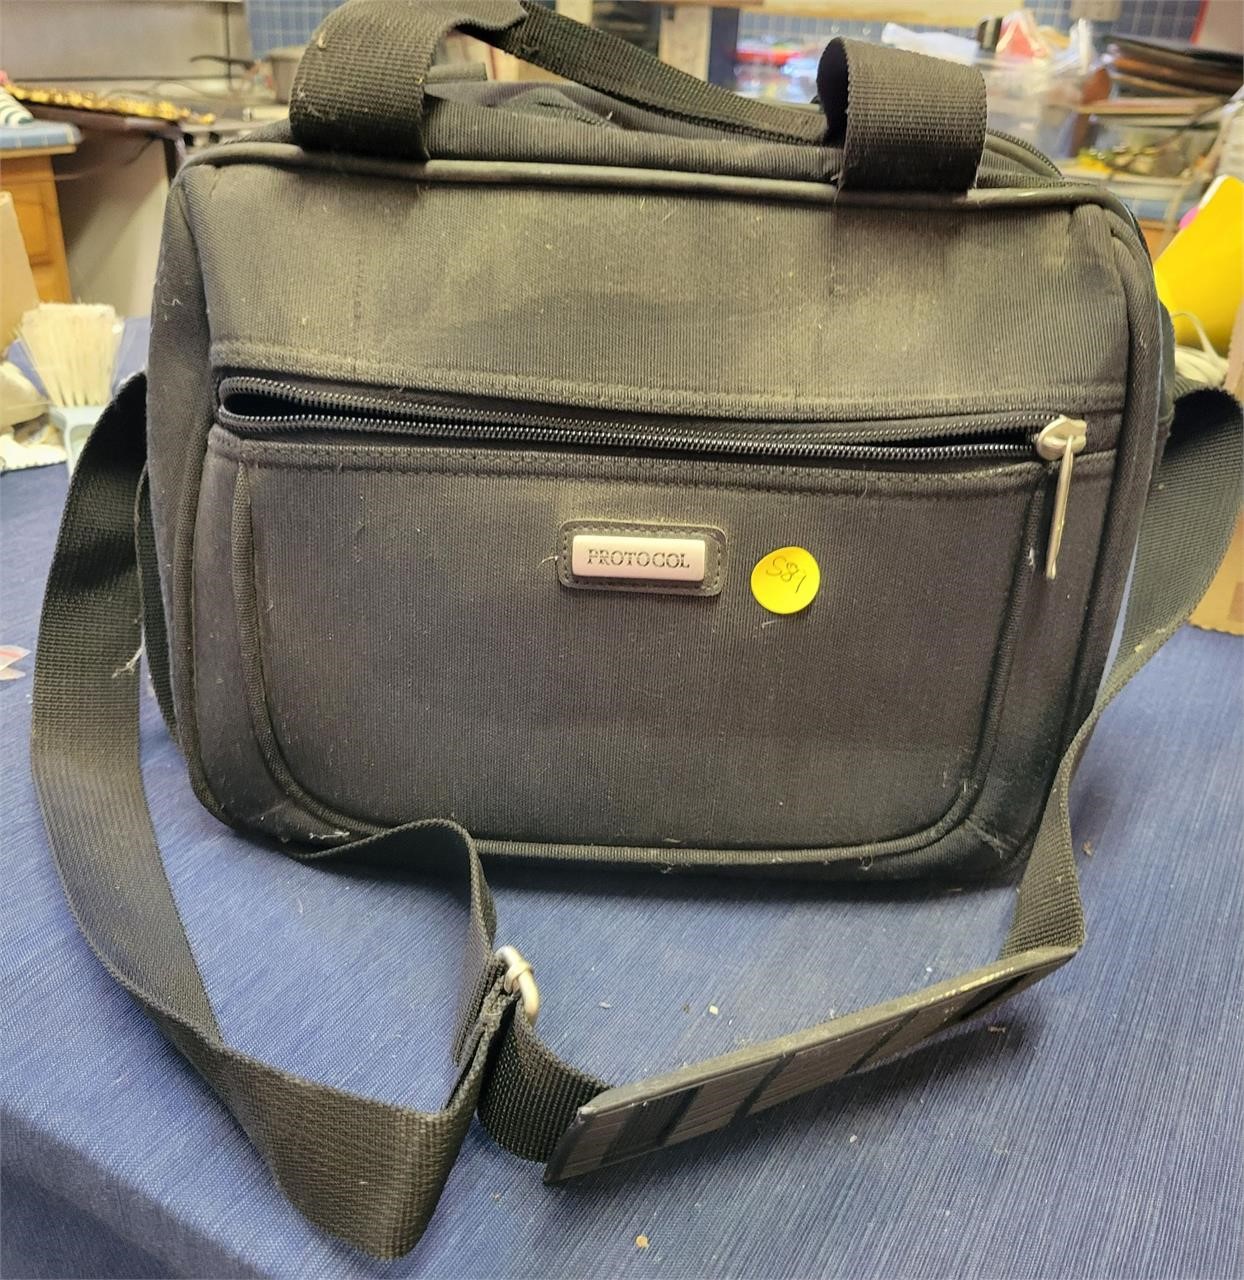 Protocol Camera/Travel Bag